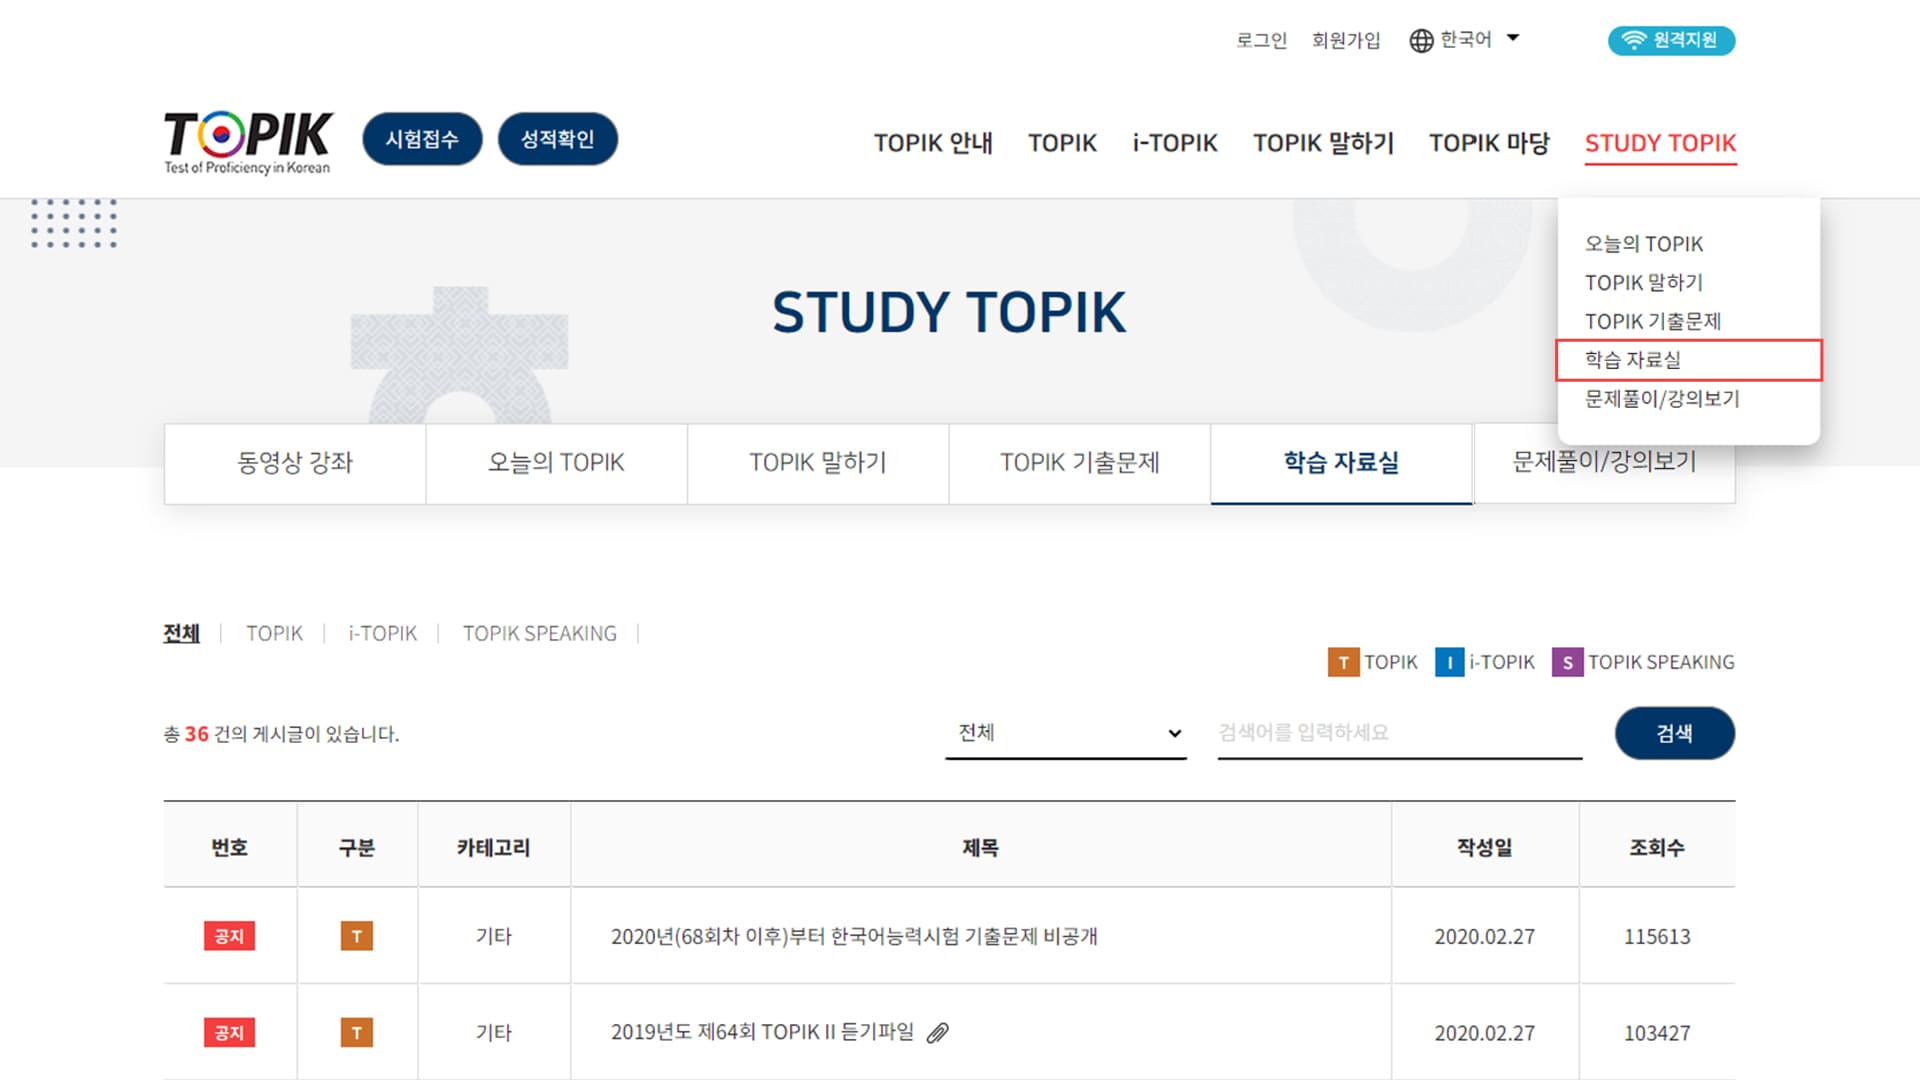 韓檢官網有各個年份的TOPIK韓語檢定考古題提供下載